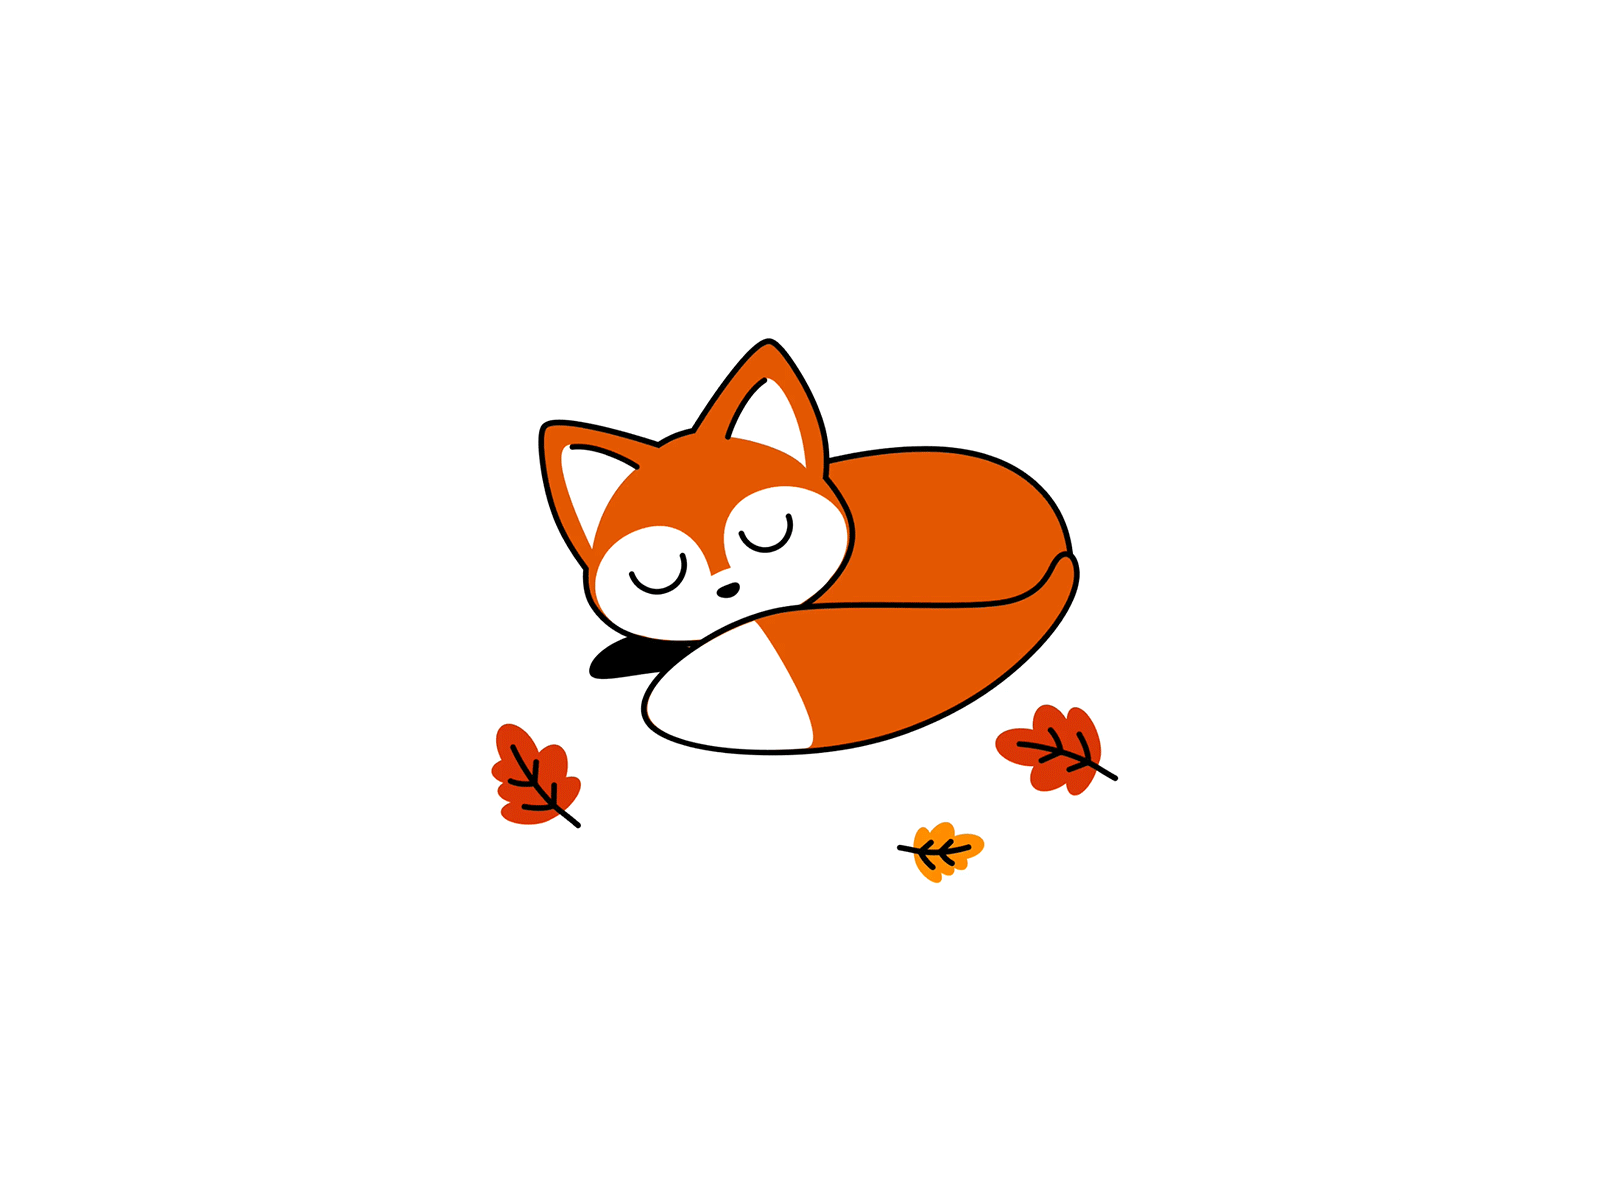 Falling animation chilltober fall fox illustration inktober inktober2019 invision studio invisionstudio leaf orange sleepy